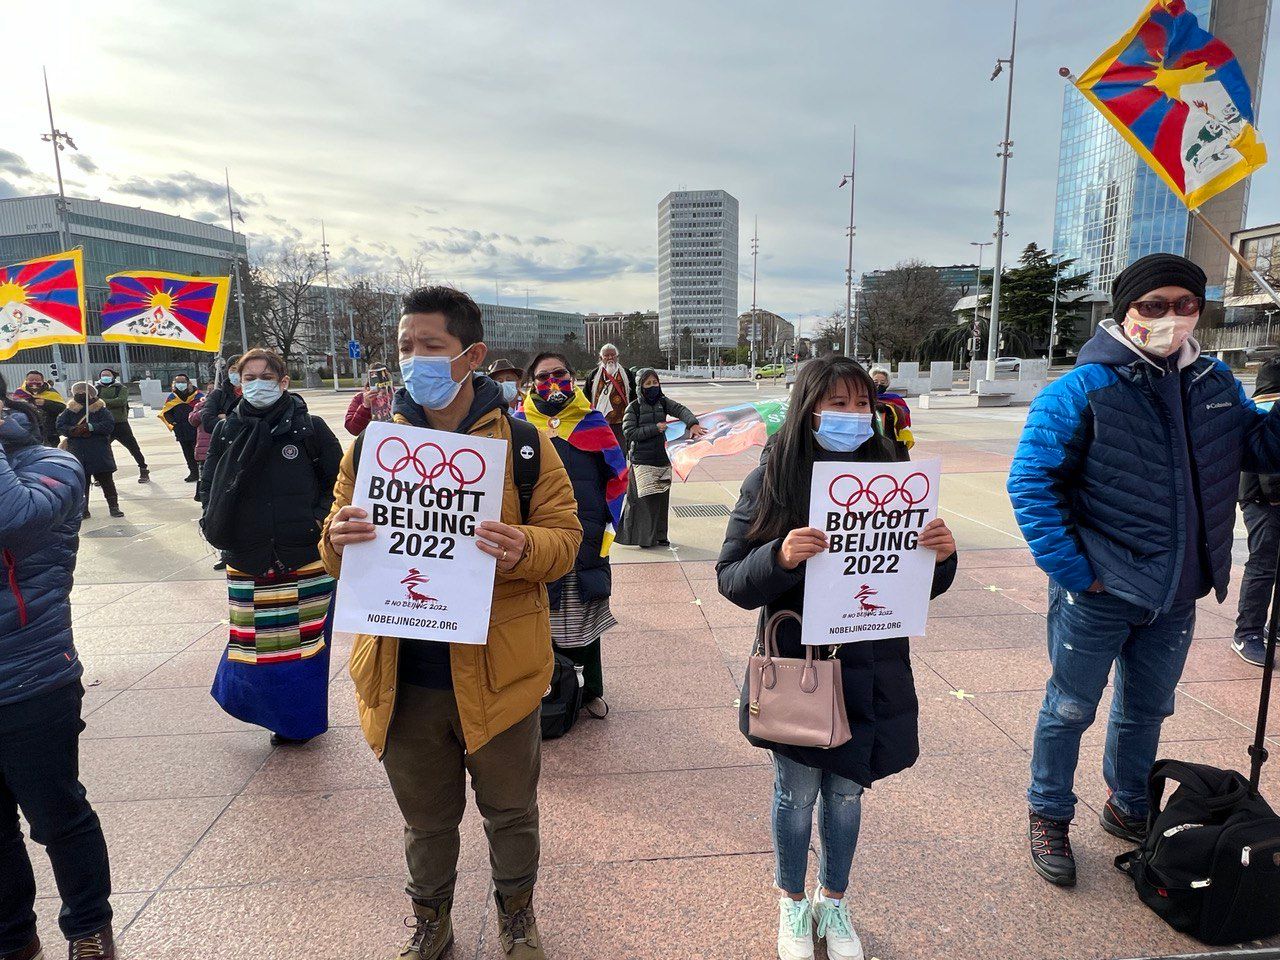 membros da comunidade tibetana da Suíça Liechtenstein se reuniram em frente ao Conselho de Direitos Humanos da ONU em protesto contra os jogos olímpicos de inverno em Pequim. 2 Comunidades tibetanas na Suíça e na Alemanha pedem boicote diplomático aos Jogos Olímpicos de Pequim 2022